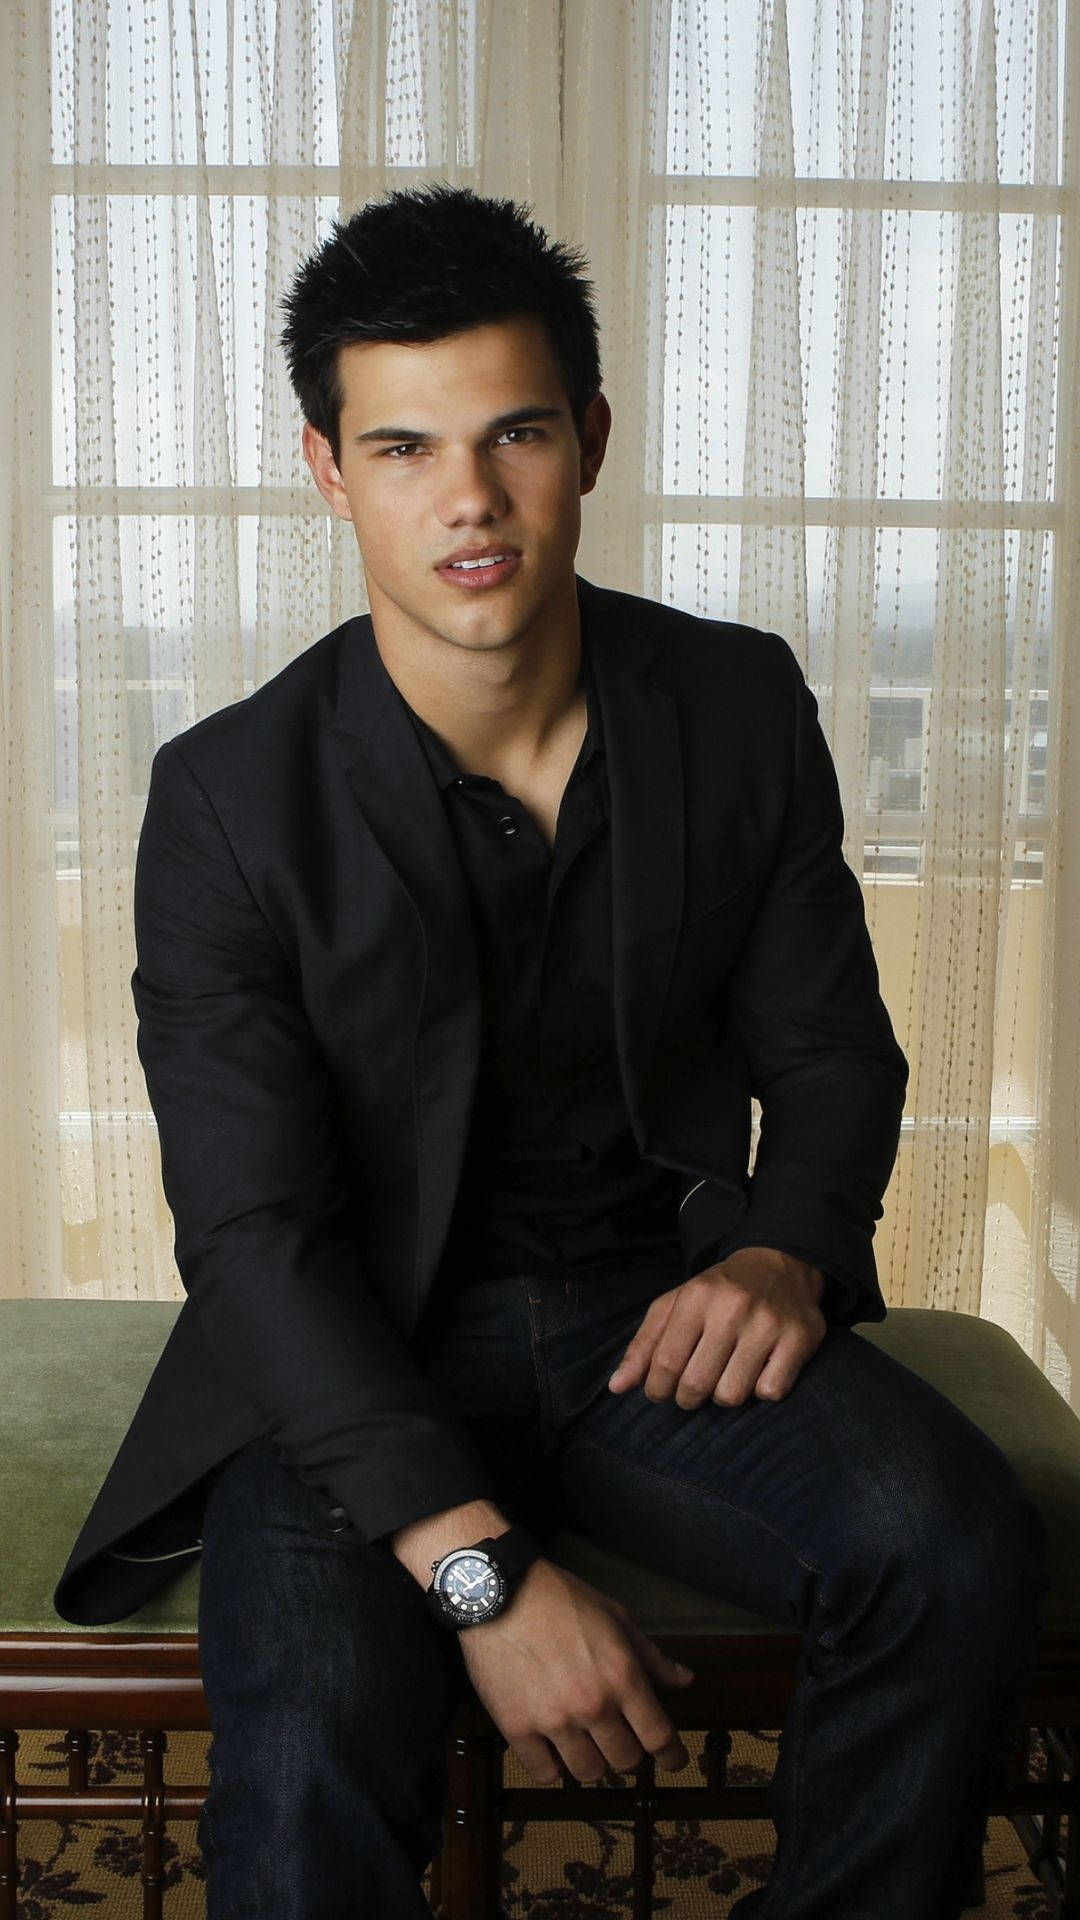 Taylor Lautner Elegant Outfit Background